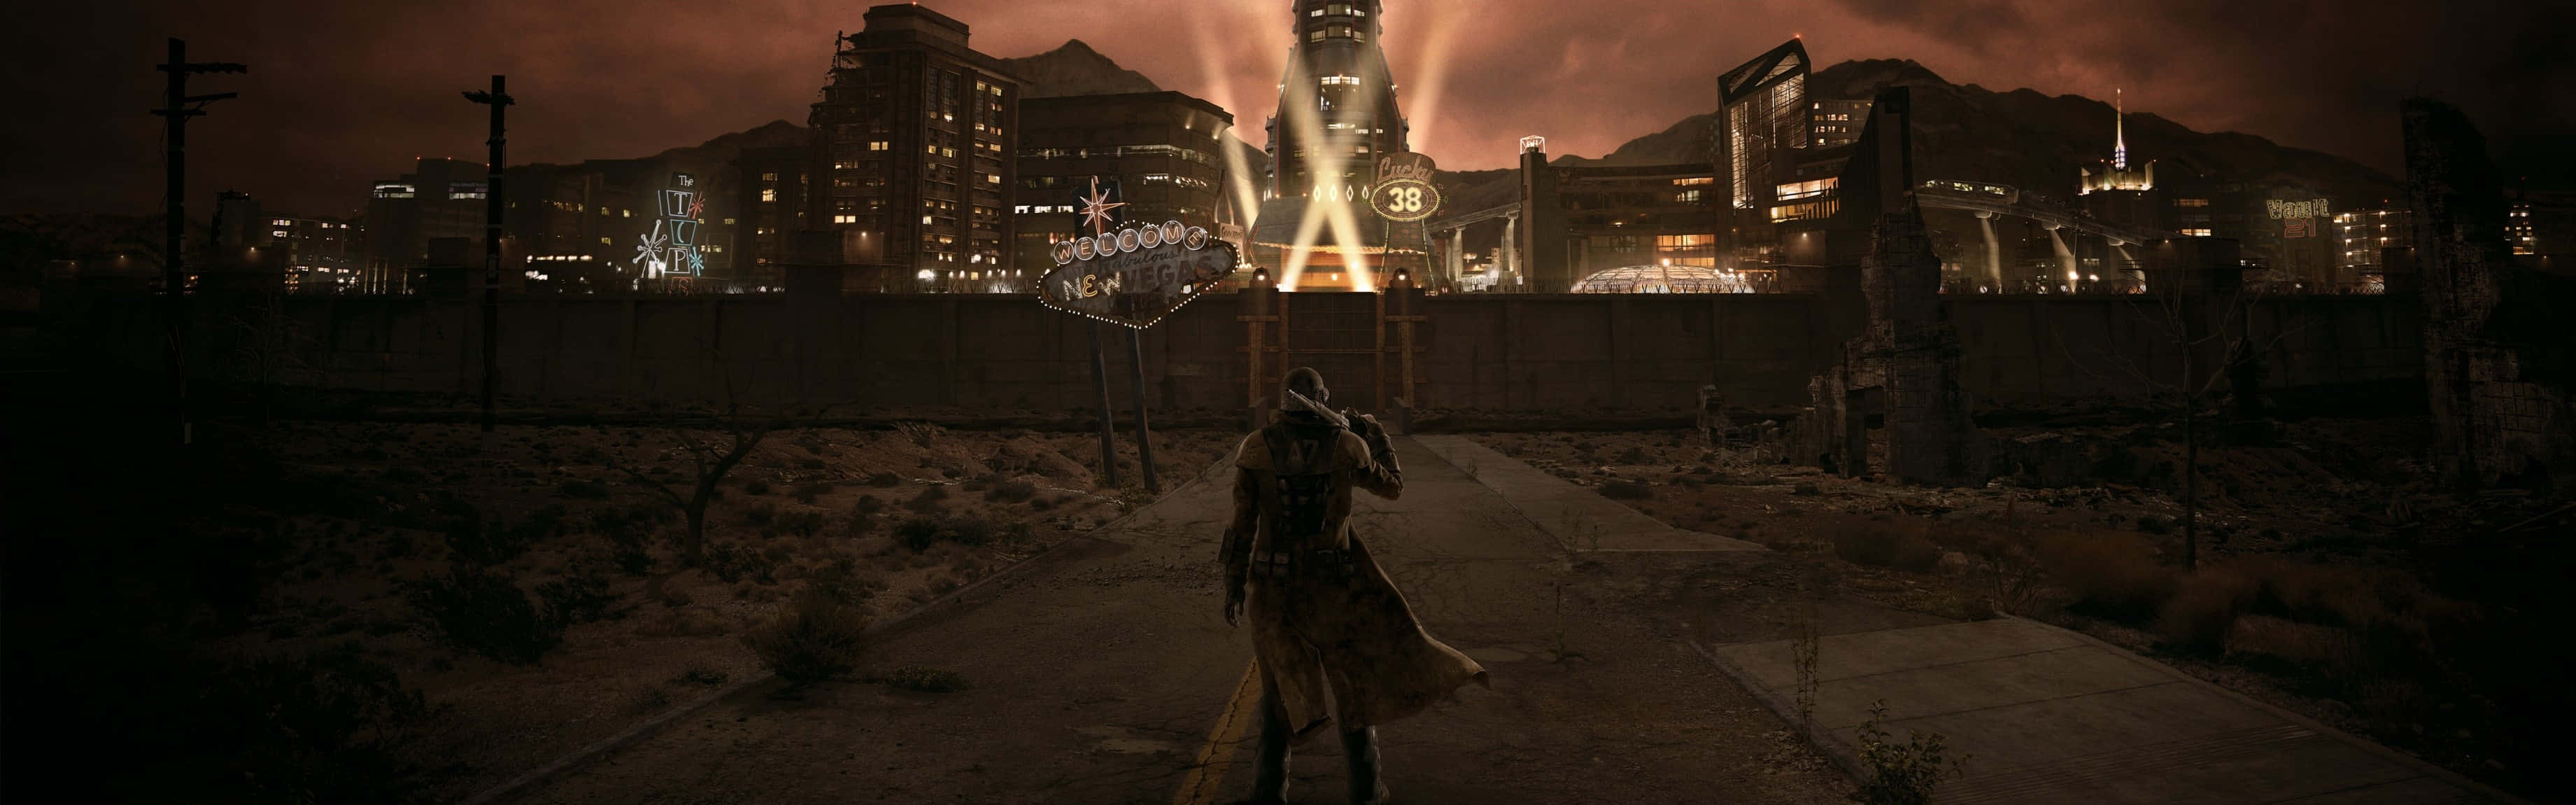 Exploreo Ermo De Fallout: New Vegas. Papel de Parede